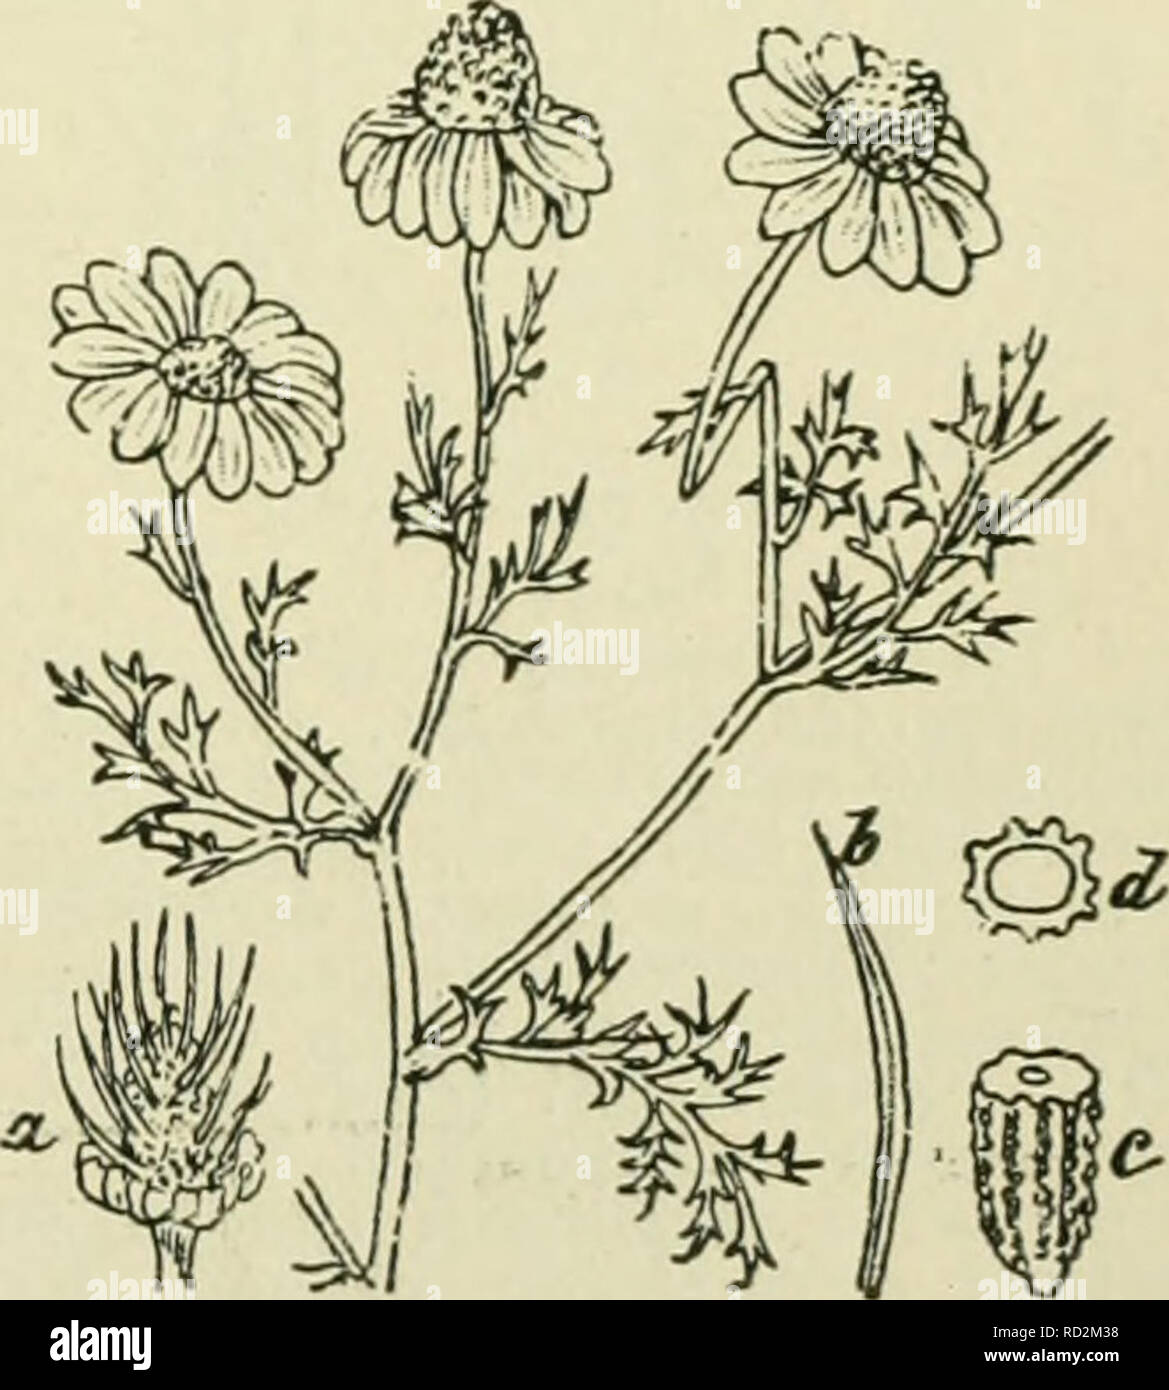 . De flora van Nederland. Plants. A. ruthènica') M. B. R ii 1 11 cc n se 11 c kamille (fi^- 474). De plant gelijkt veel op A. arvensis, doch is grijswollig door afstaande haren. De bladen zijn dubbel vindeelig met breedere bladslippcn dan bij A. arvensis. De bloembodem is lang cylindrisch, van binnen met merg gevuld. De strooschubben zijn lancetvormig, naar boven iets verbreed, stomp, getand, gaan plotseling in de stekel- punt over. Zij zijn veel teerder en door- schijnender dan bij A. arvensis. De bin- nenste vruchten hebben een kort vliezig, de buitenste vaak een scheef afgeknot kroontje. Ov Stock Photo